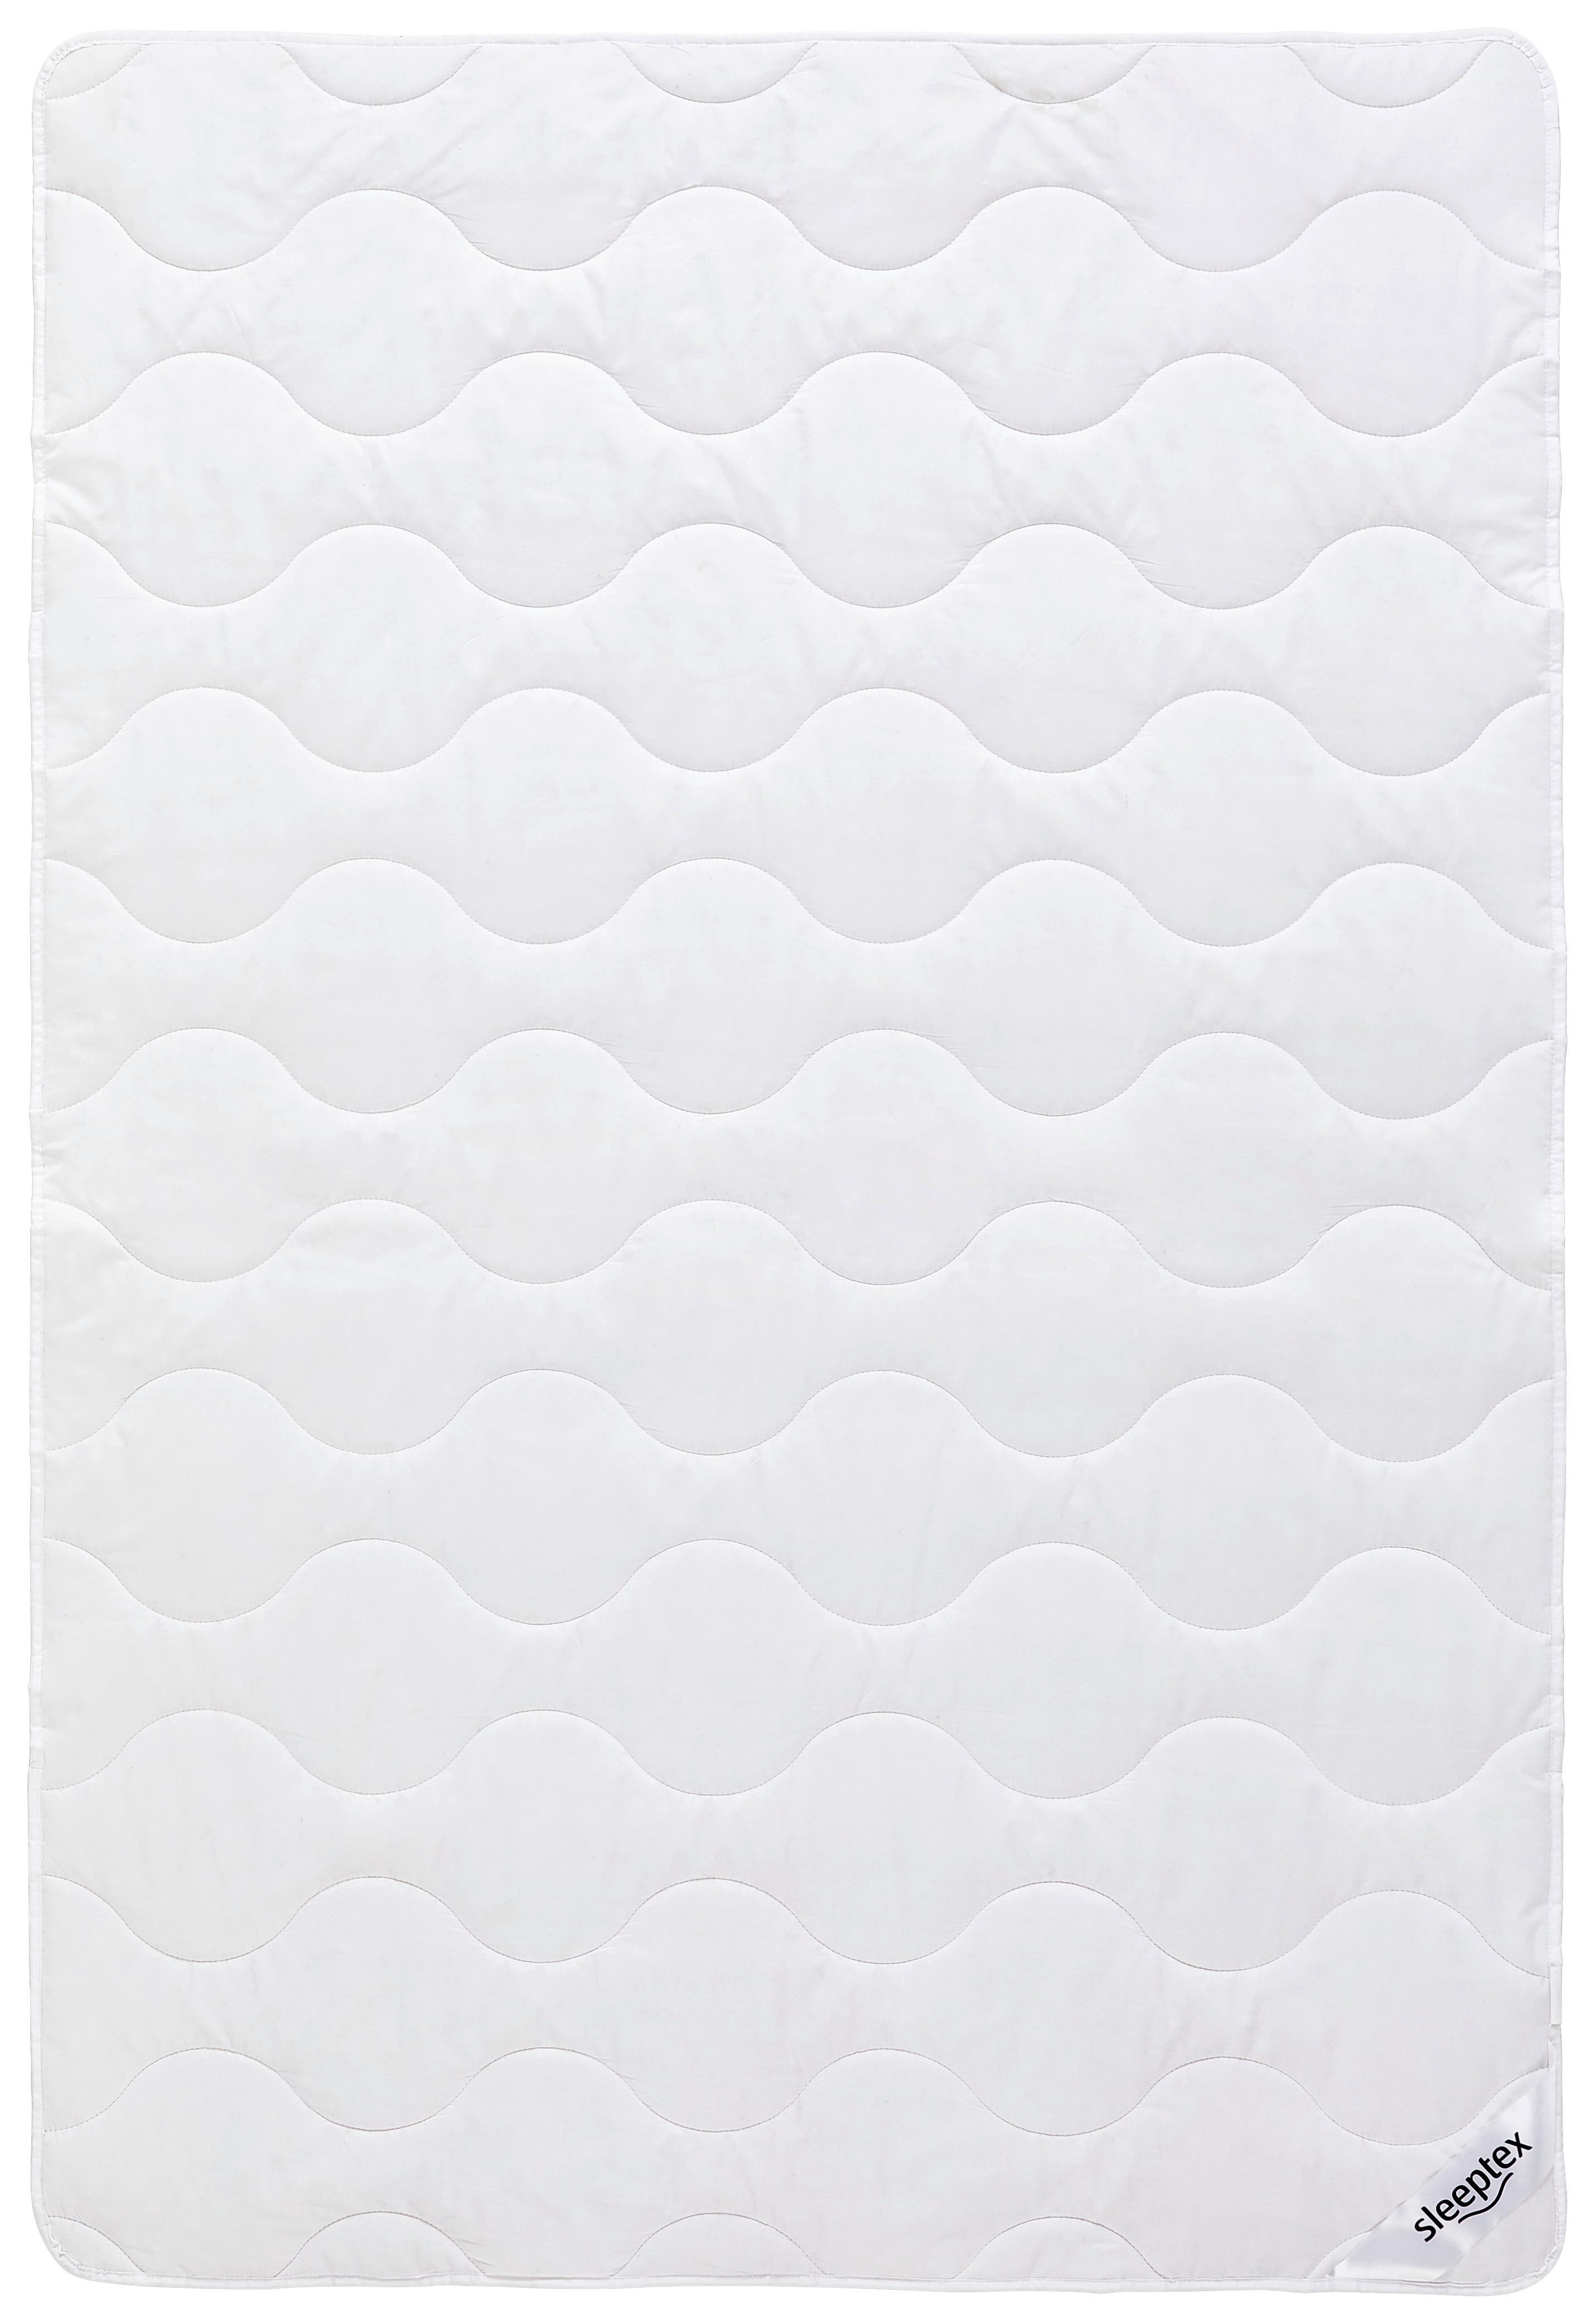 SOMMERBETT  Baros  200/200 cm   - Weiß, KONVENTIONELL, Textil (200/200cm) - Sleeptex